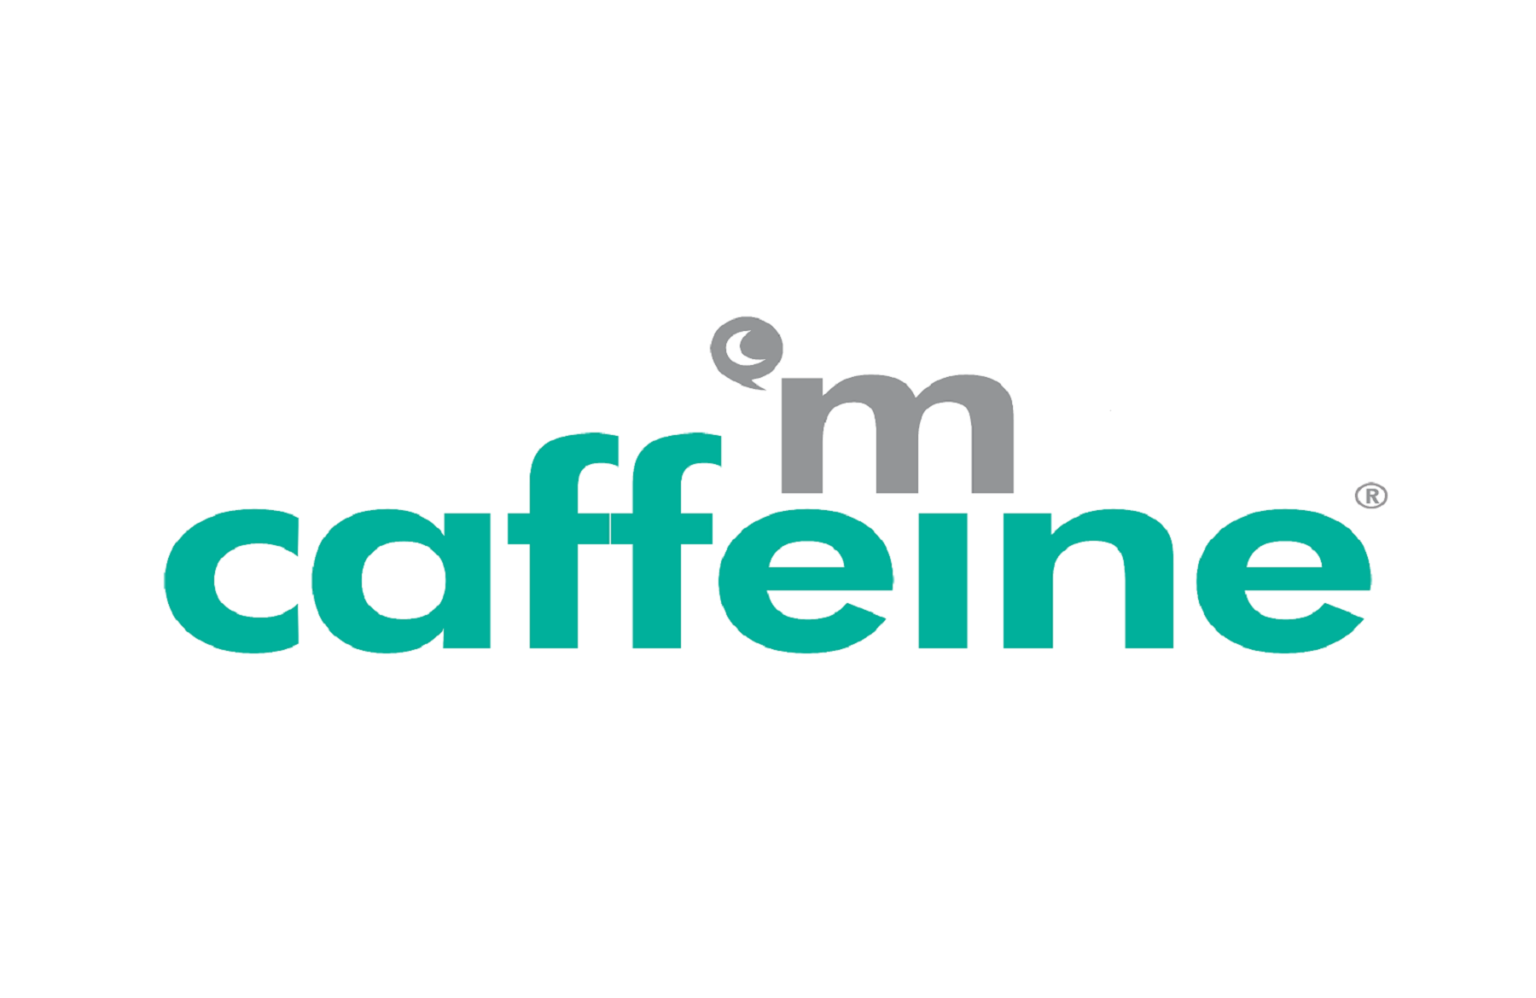 caffeinated capital